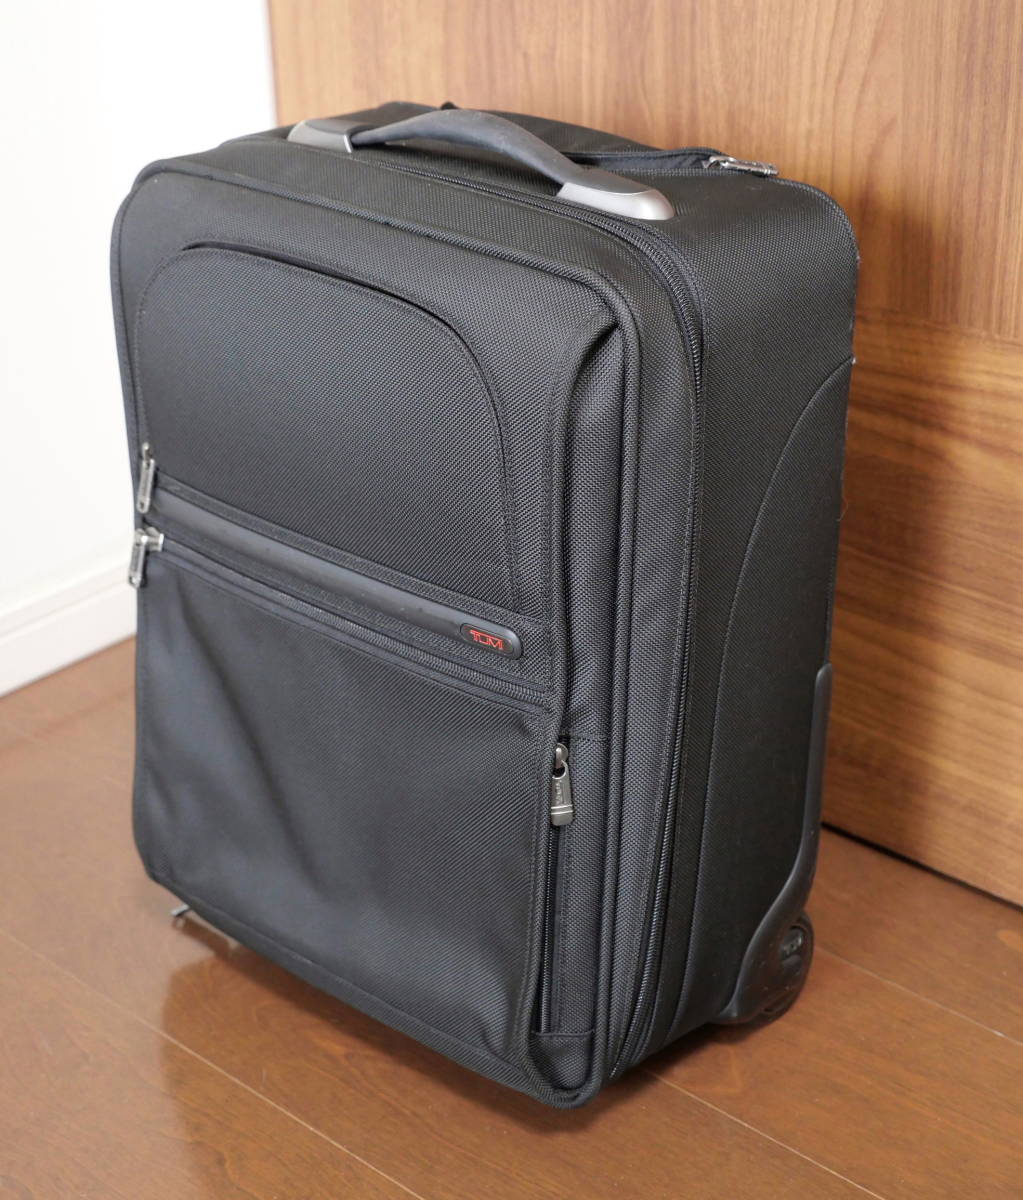 適当な価格 TUMI キャリーケース スーツケース キャリーバッグ 26105